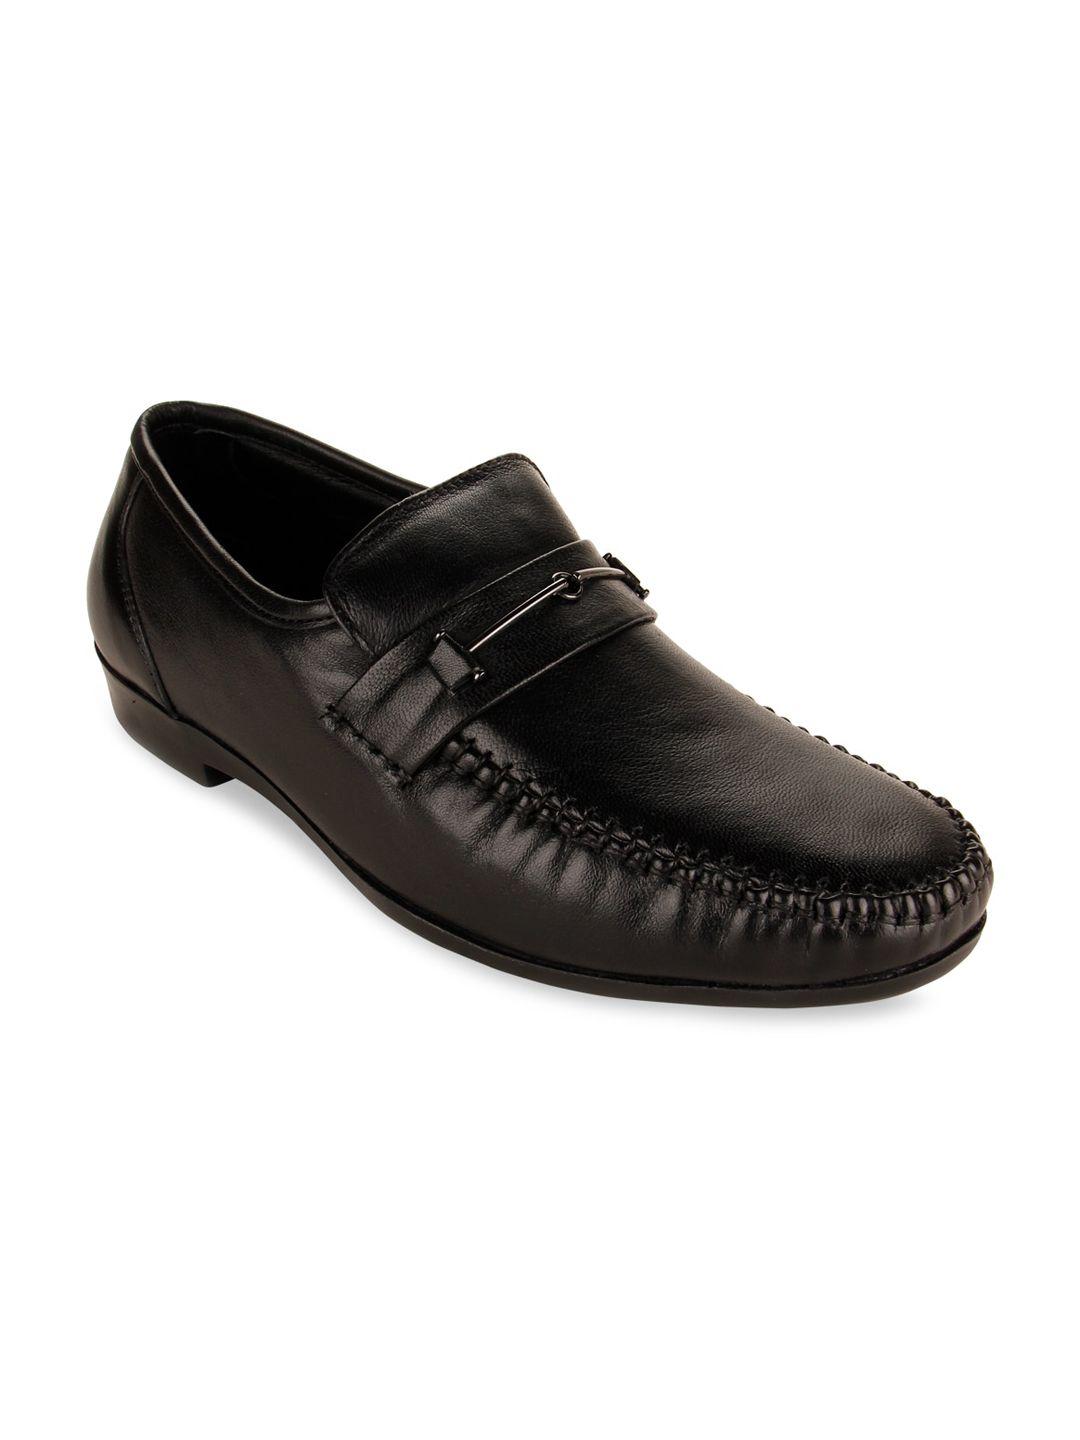 regal-men-black-solid-slip-on-loafers